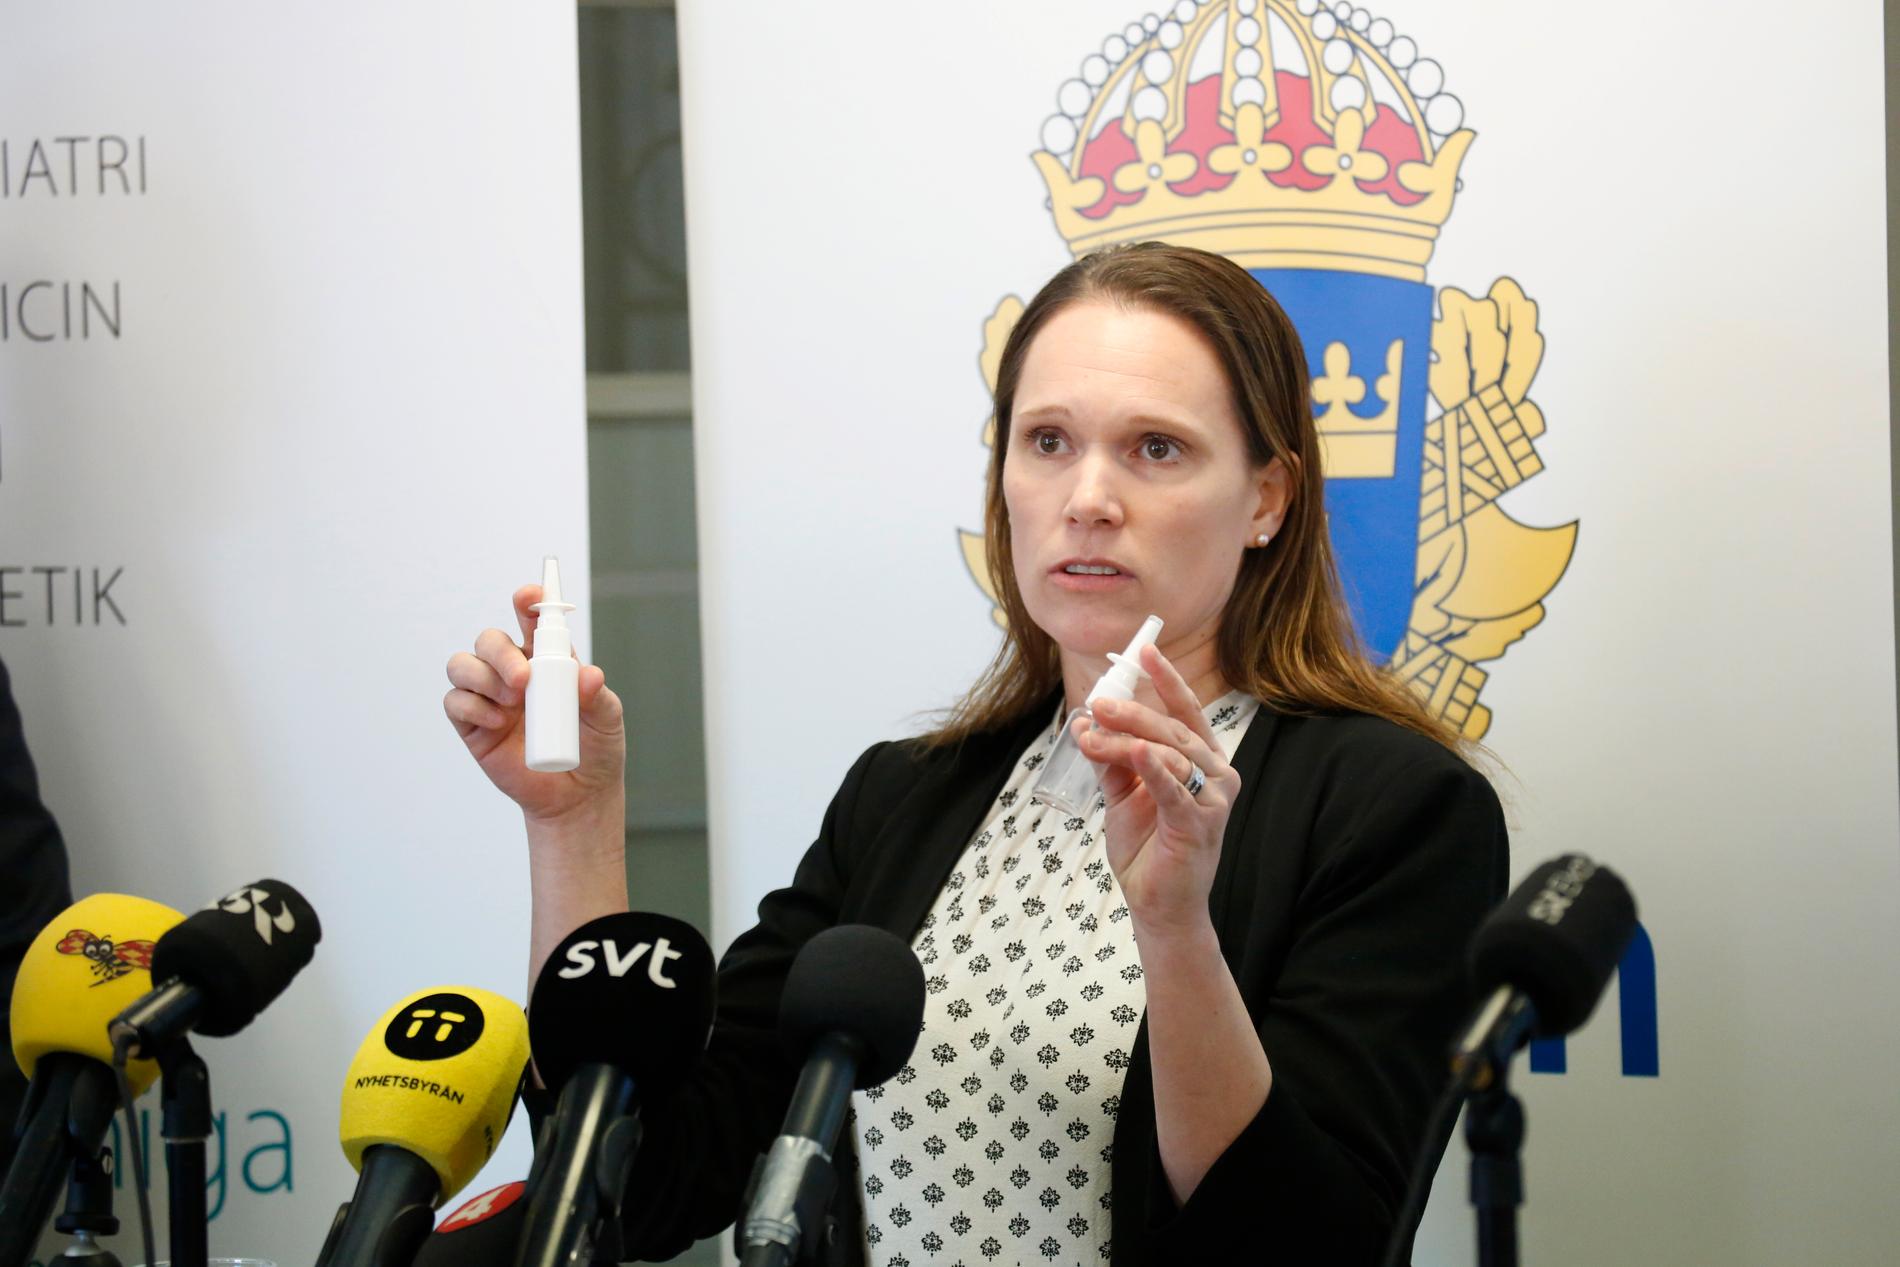 Åsa Torlöf, polisens utredare, vid en presskonferens i samband med åtalet.